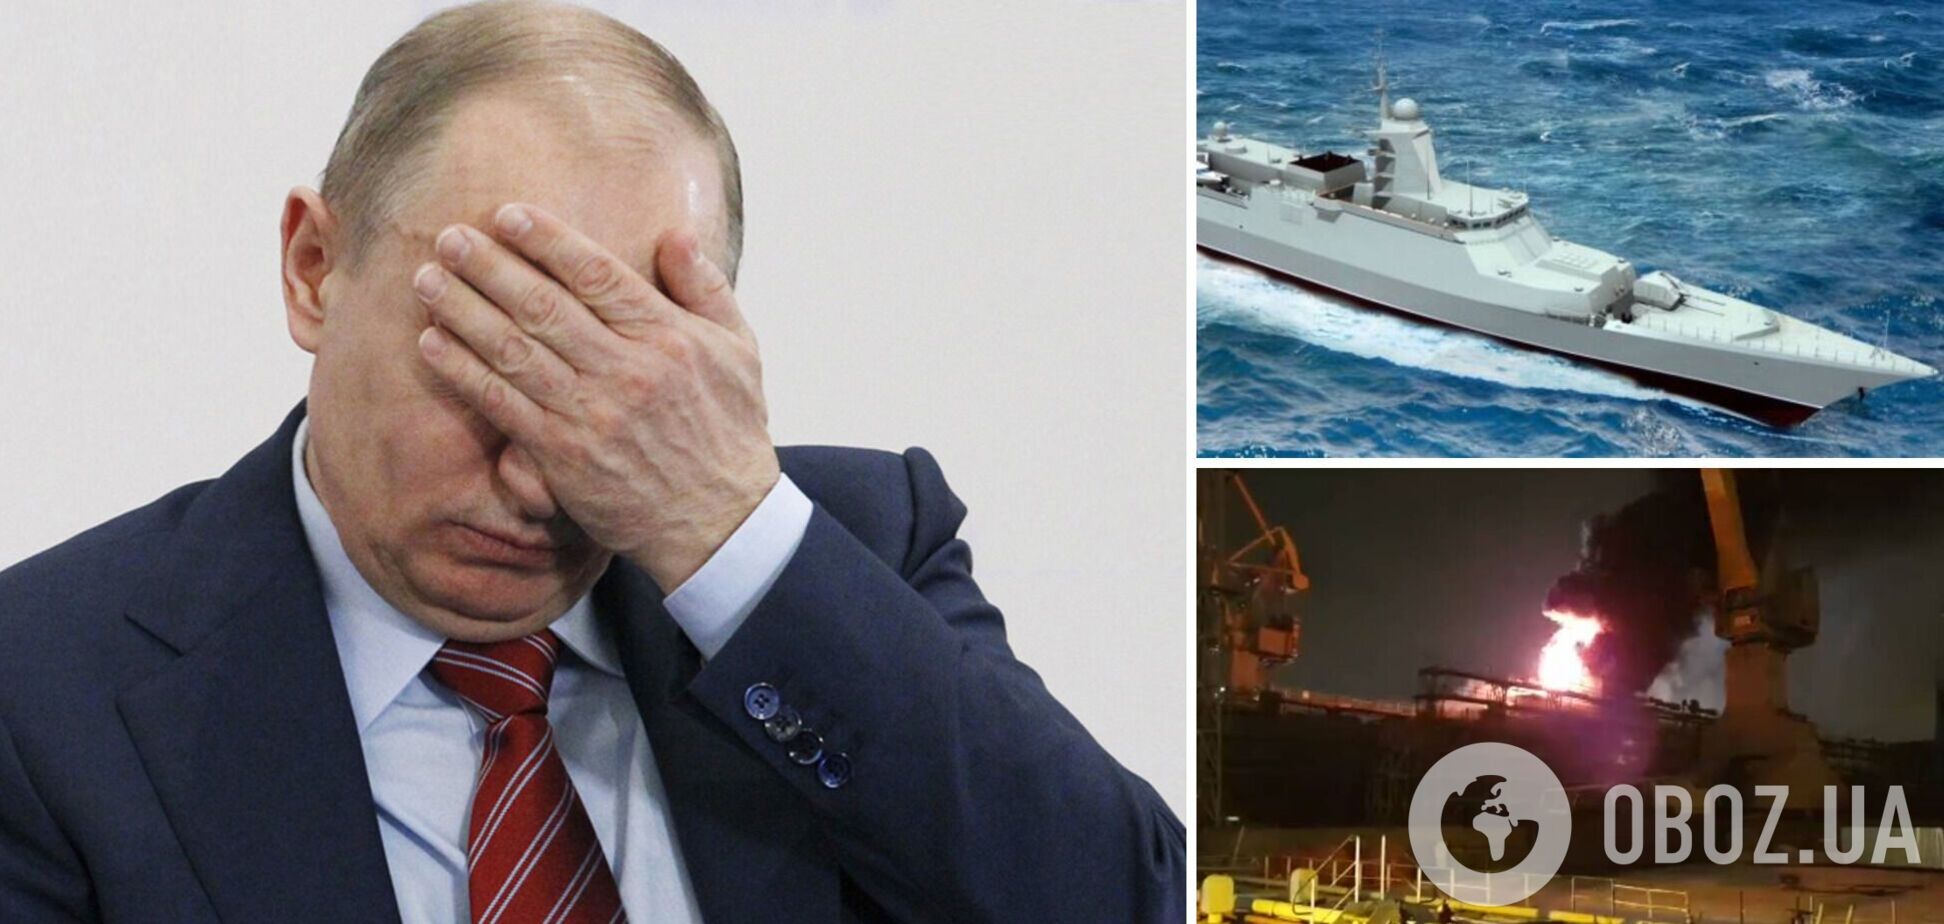 Поки світ обговорює ультиматуми Путіна-Лаврова, у Пітері святково догорає 'гроза НАТО'